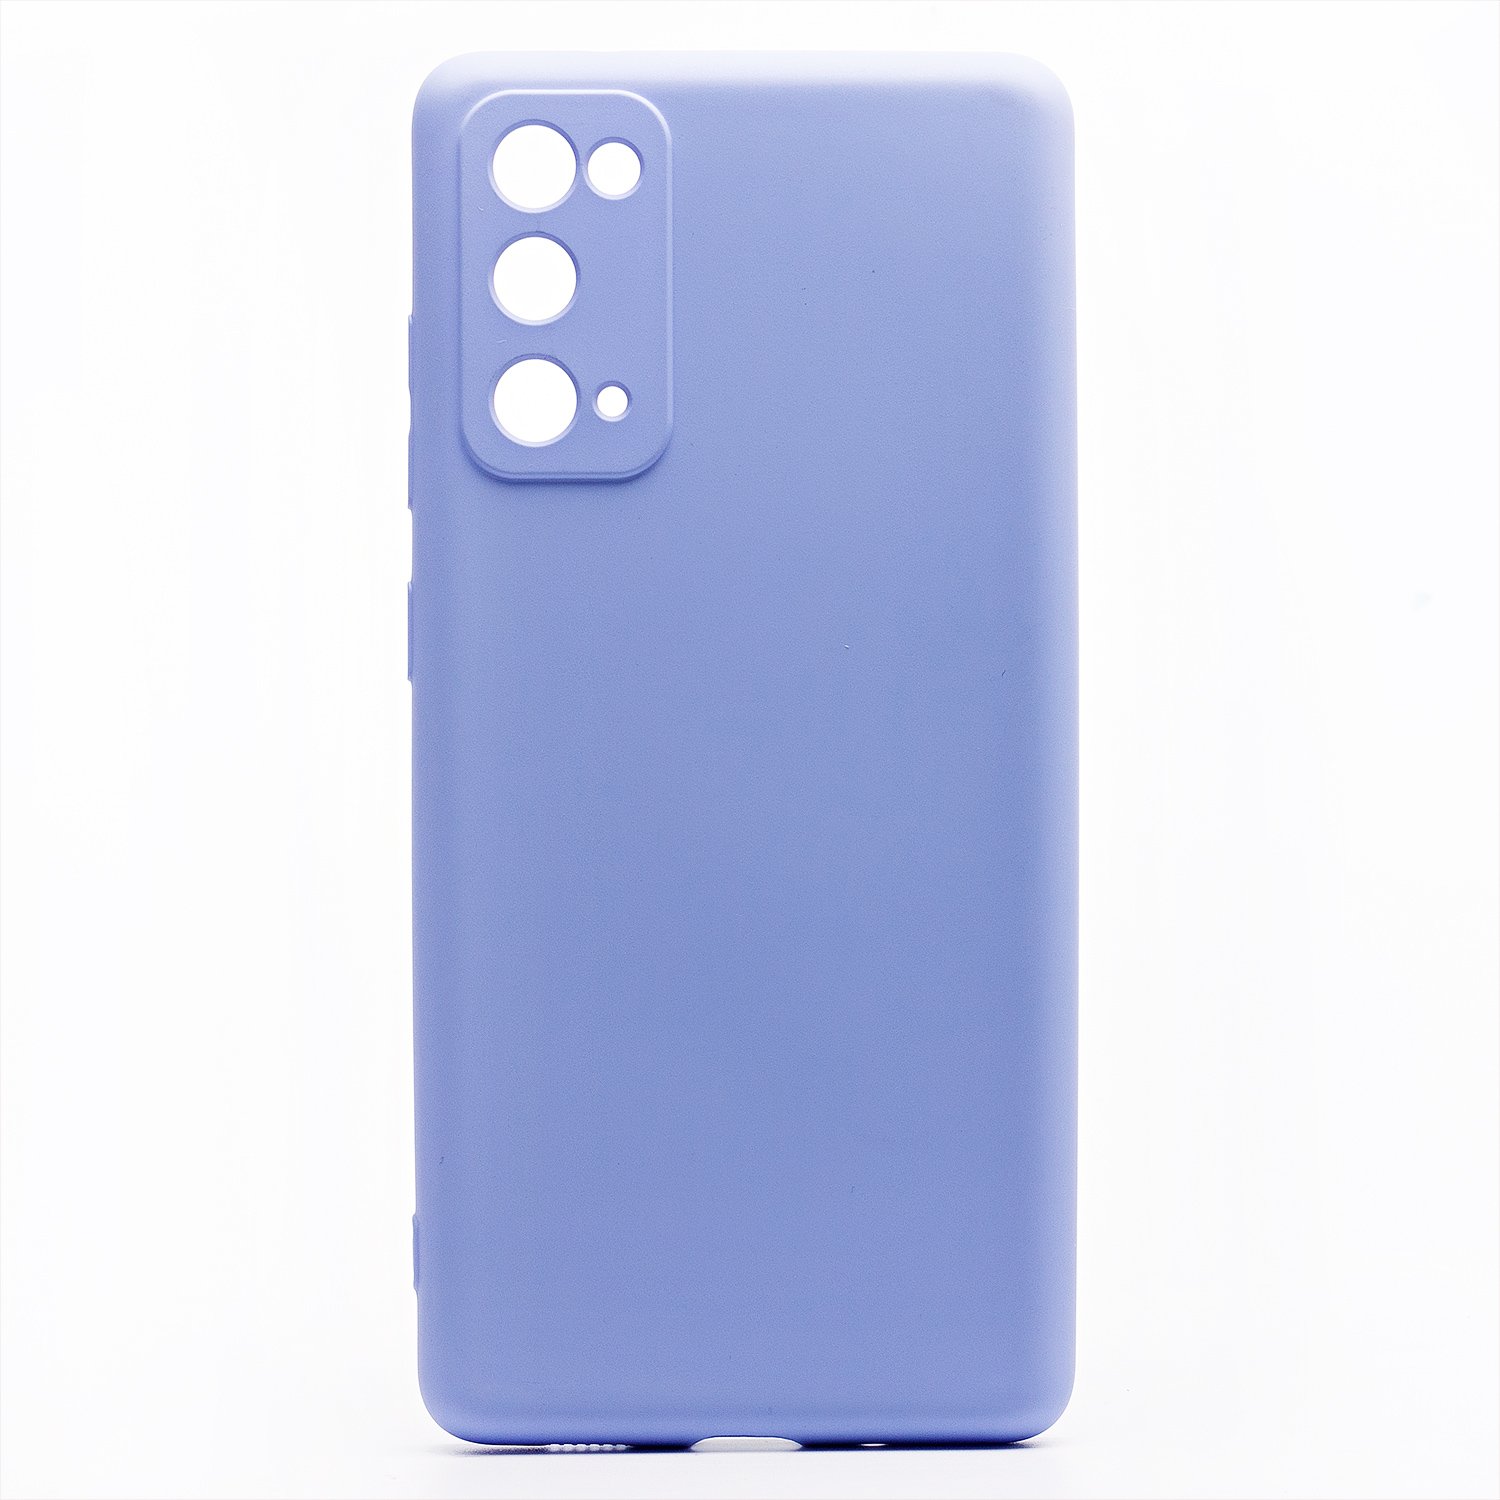 Чехол-накладка Activ Full Original Design для смартфона Samsung Galaxy S20FE, фиолетовый (129795)